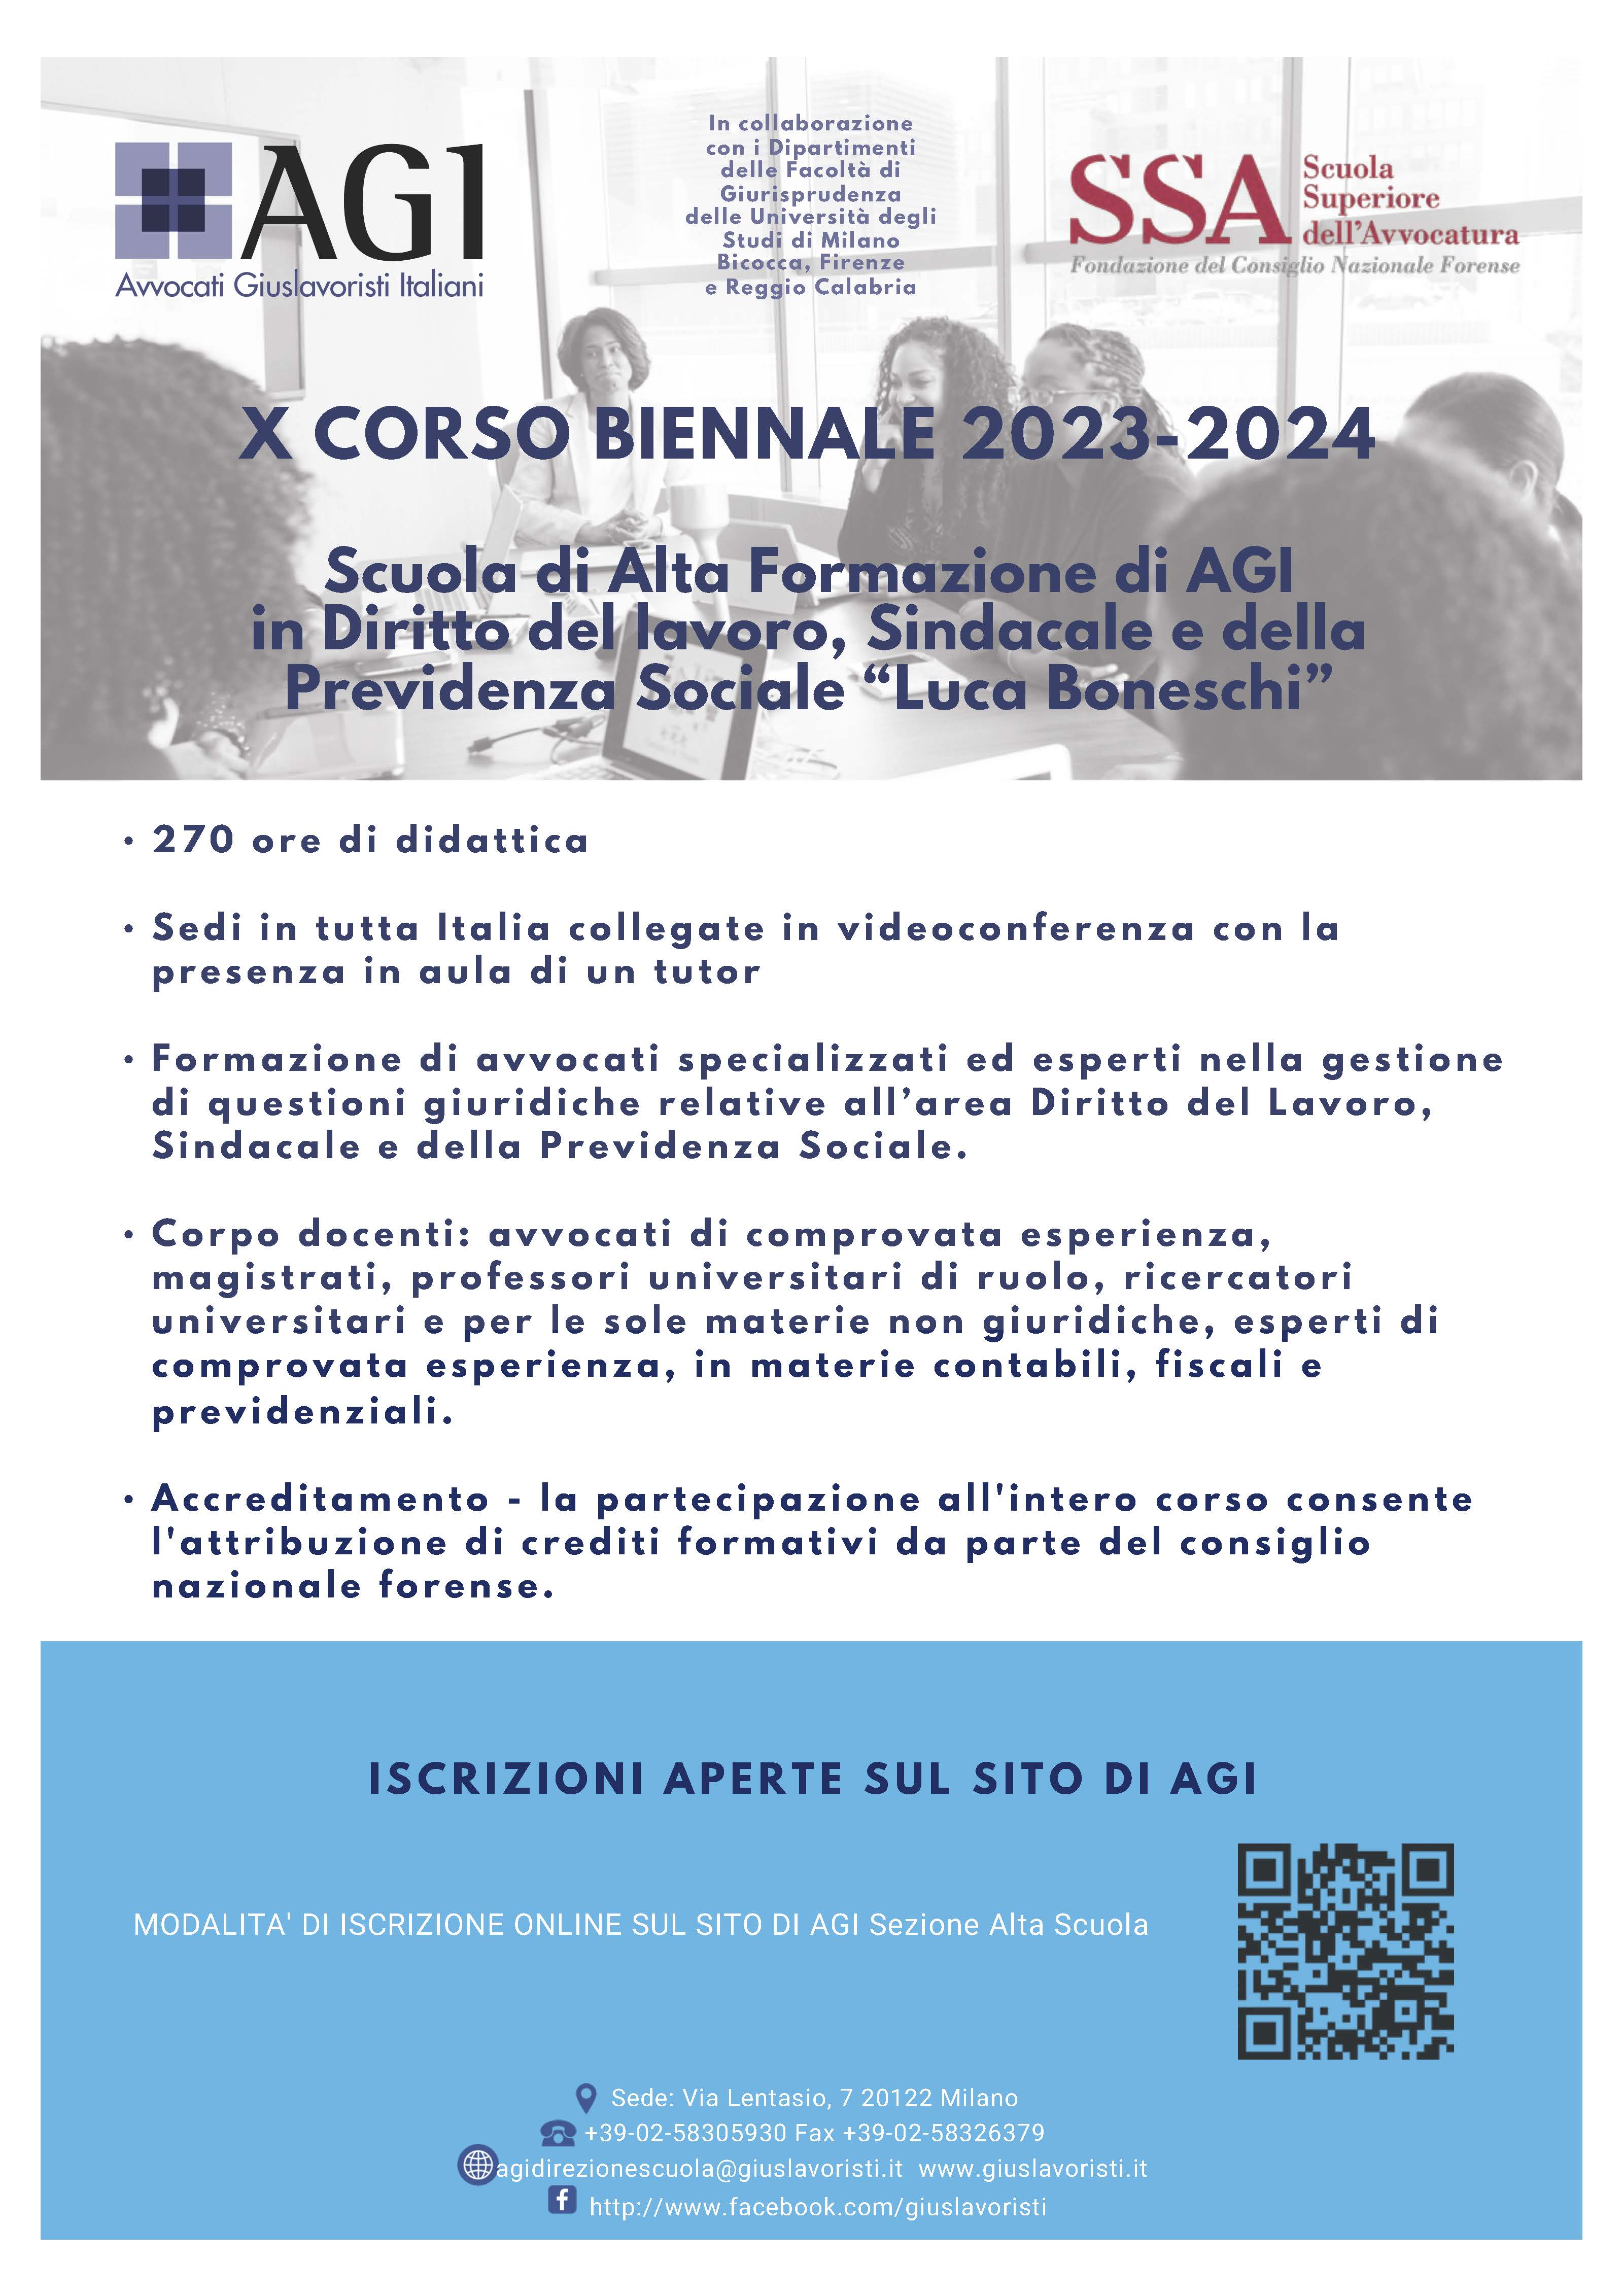 SCUOLA DI ALTA FORMAZIONE X BIENNIO 2023-2024 - ISCRIZIONI PROROGATE 